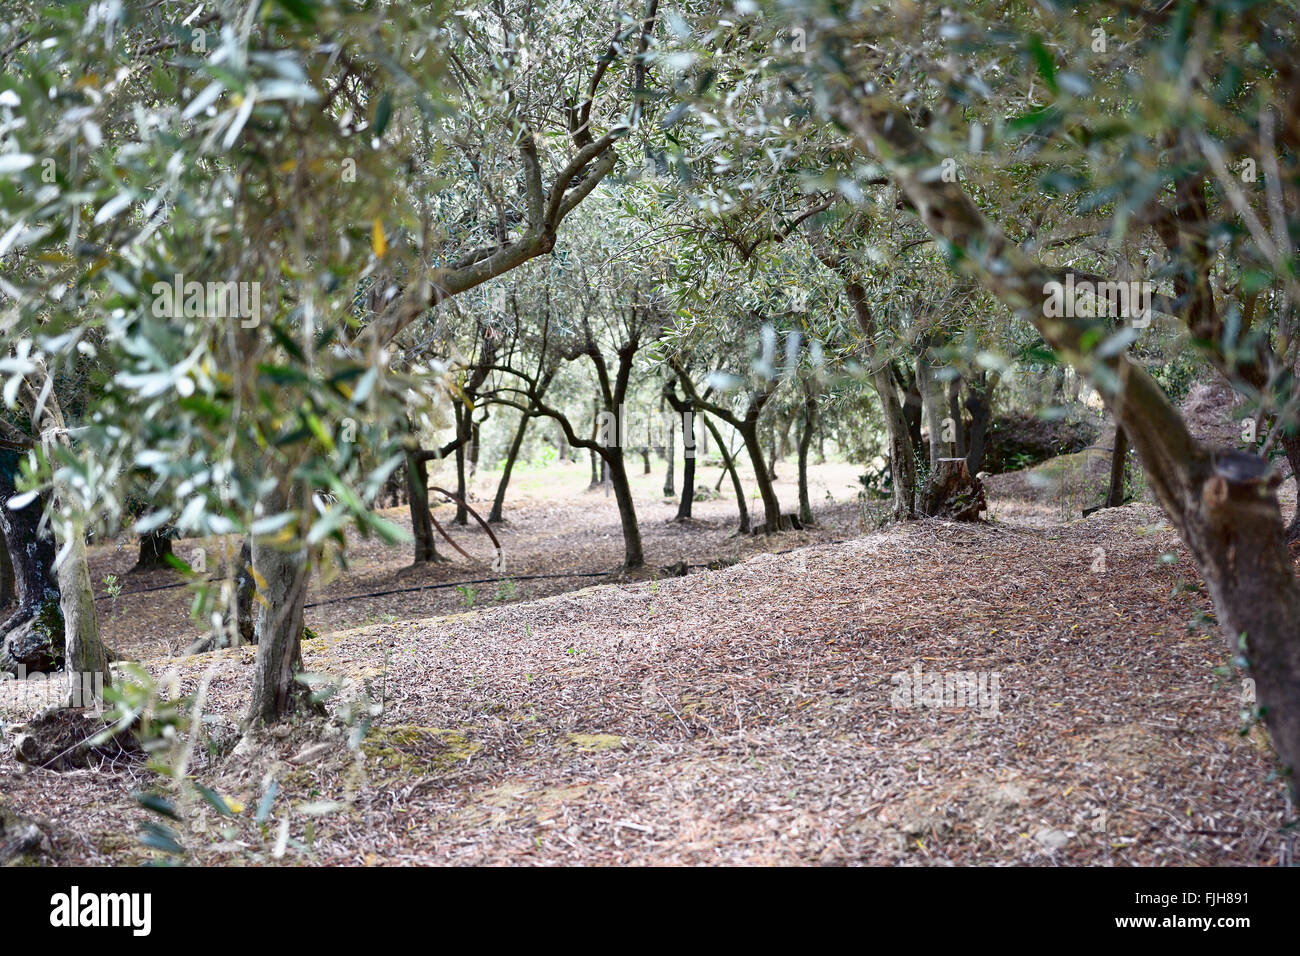 Olive groves in the field of Volastra. Volastra, Manarola, Cinque Terre, La Spezia, Liguria, Italy Stock Photo